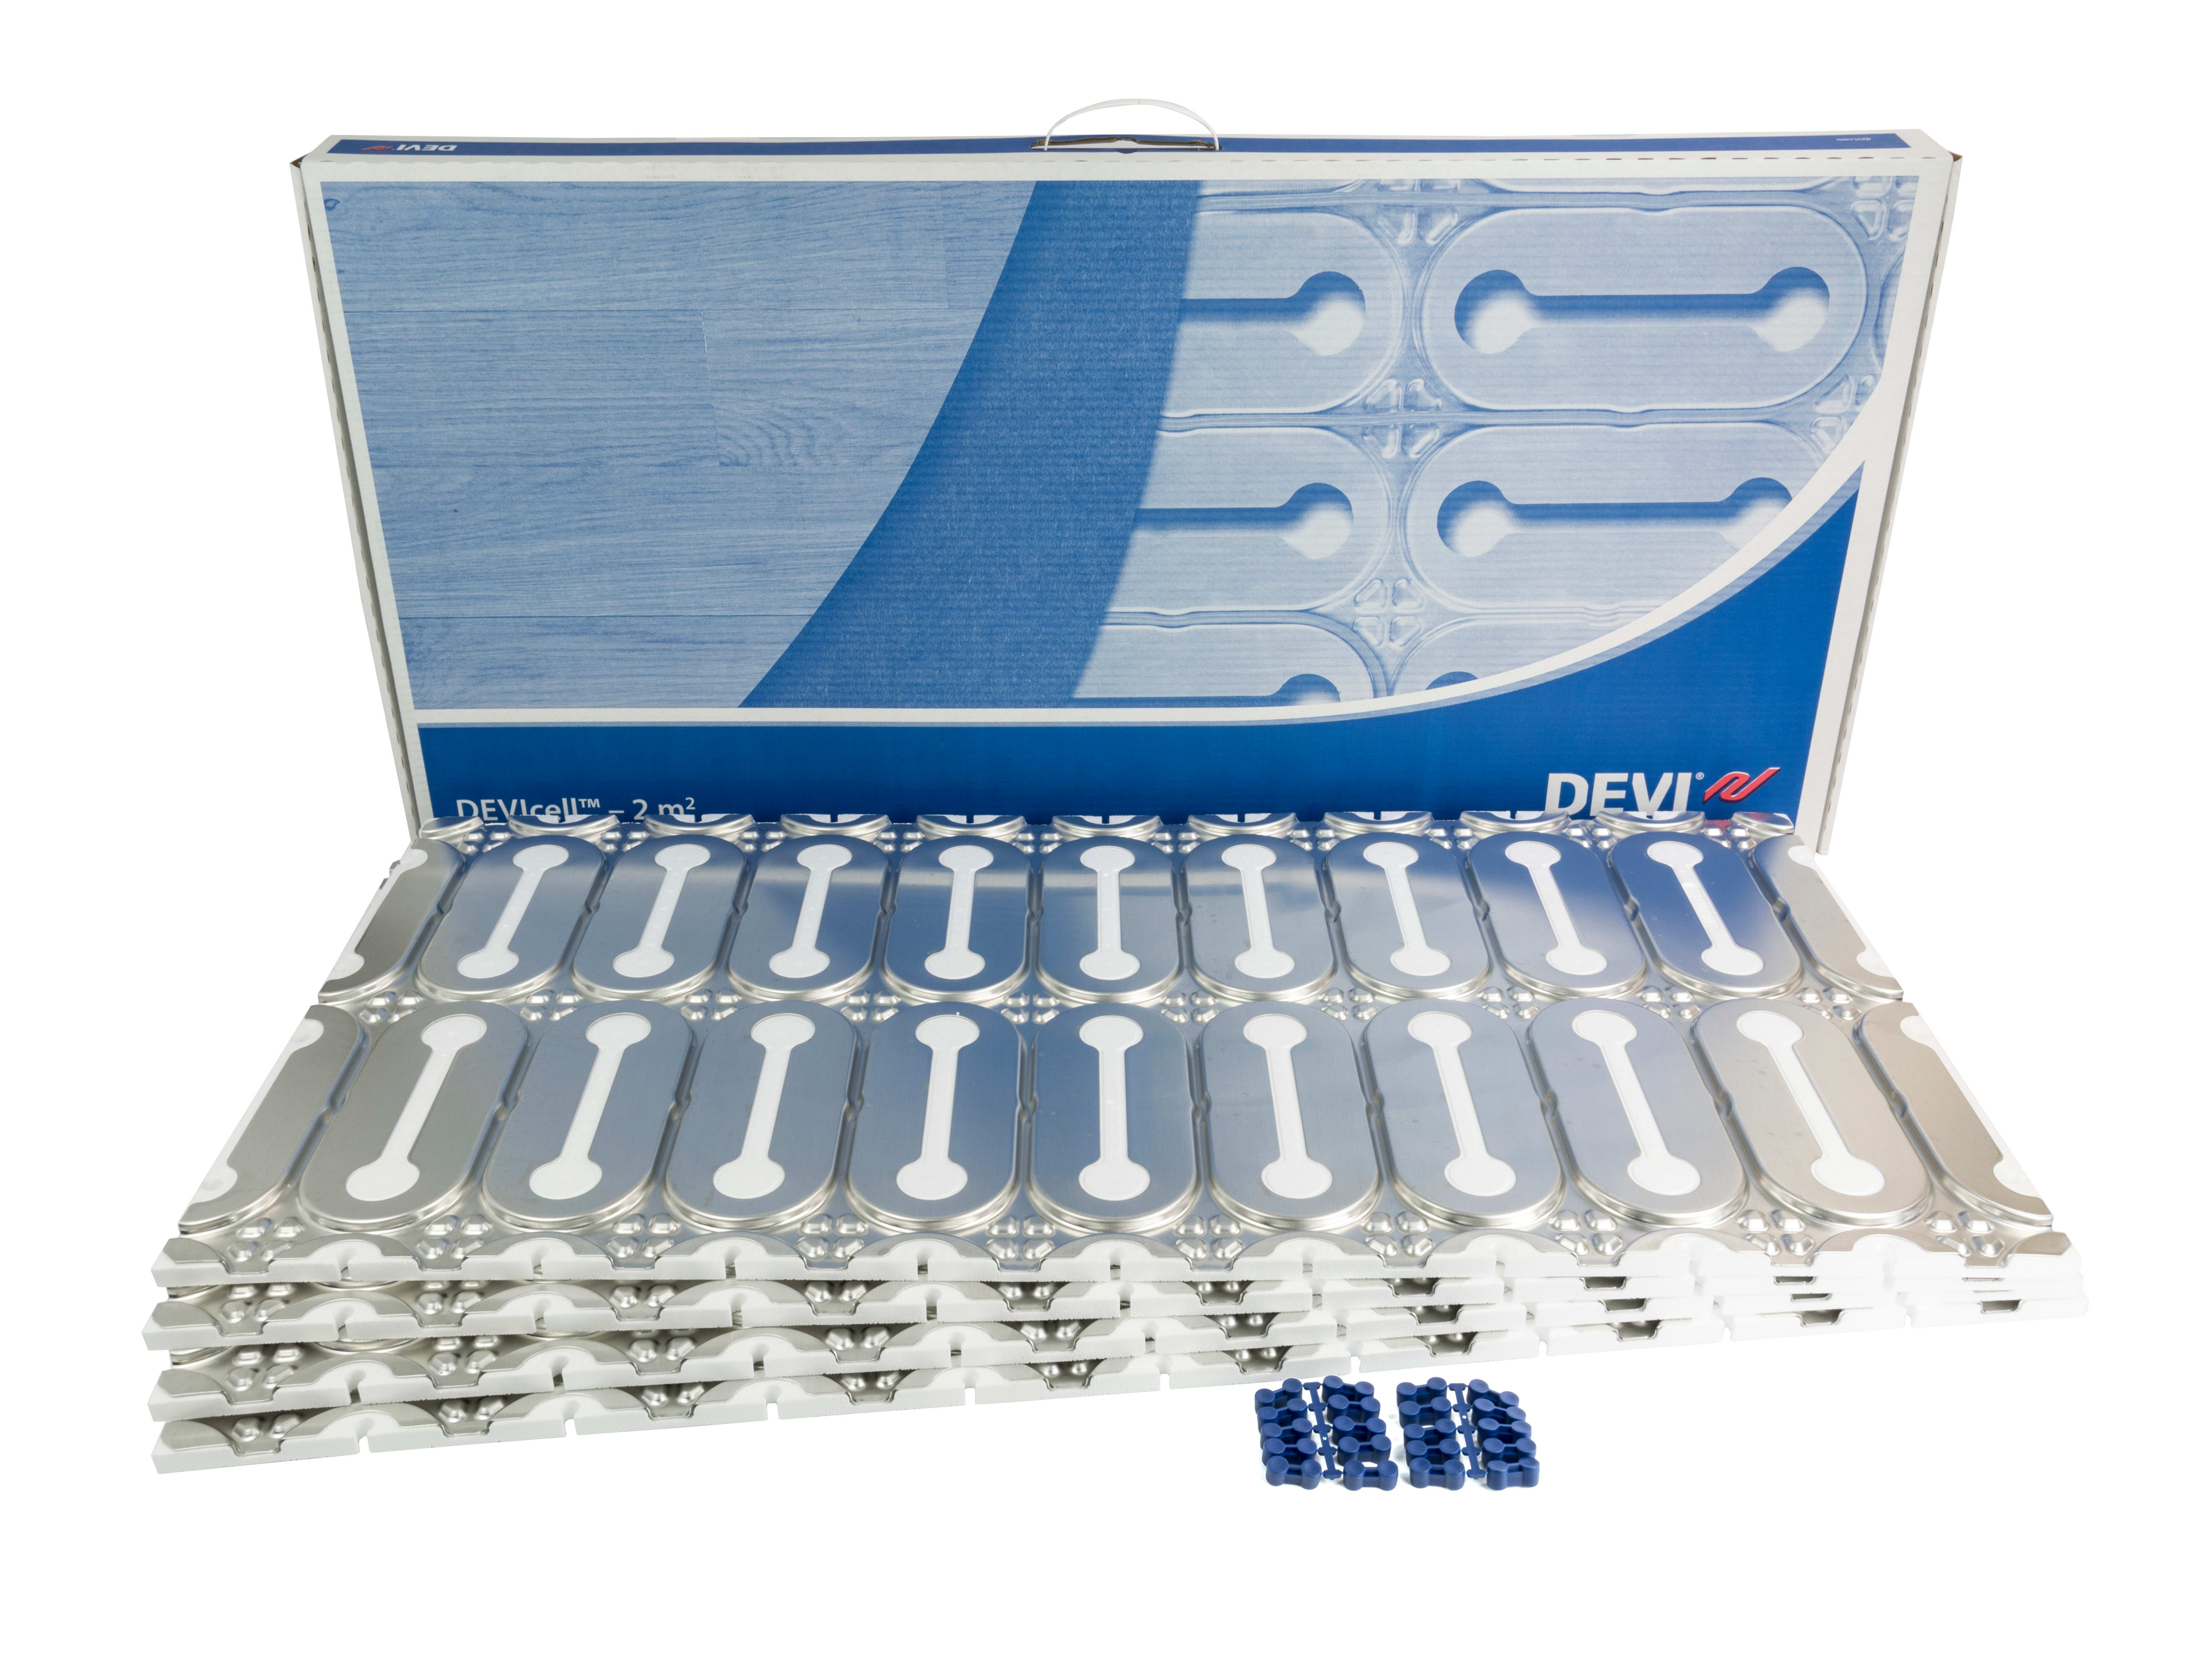 DEVI - DEVICELL DRY 2M2 isolasjonsplate for varmekabel